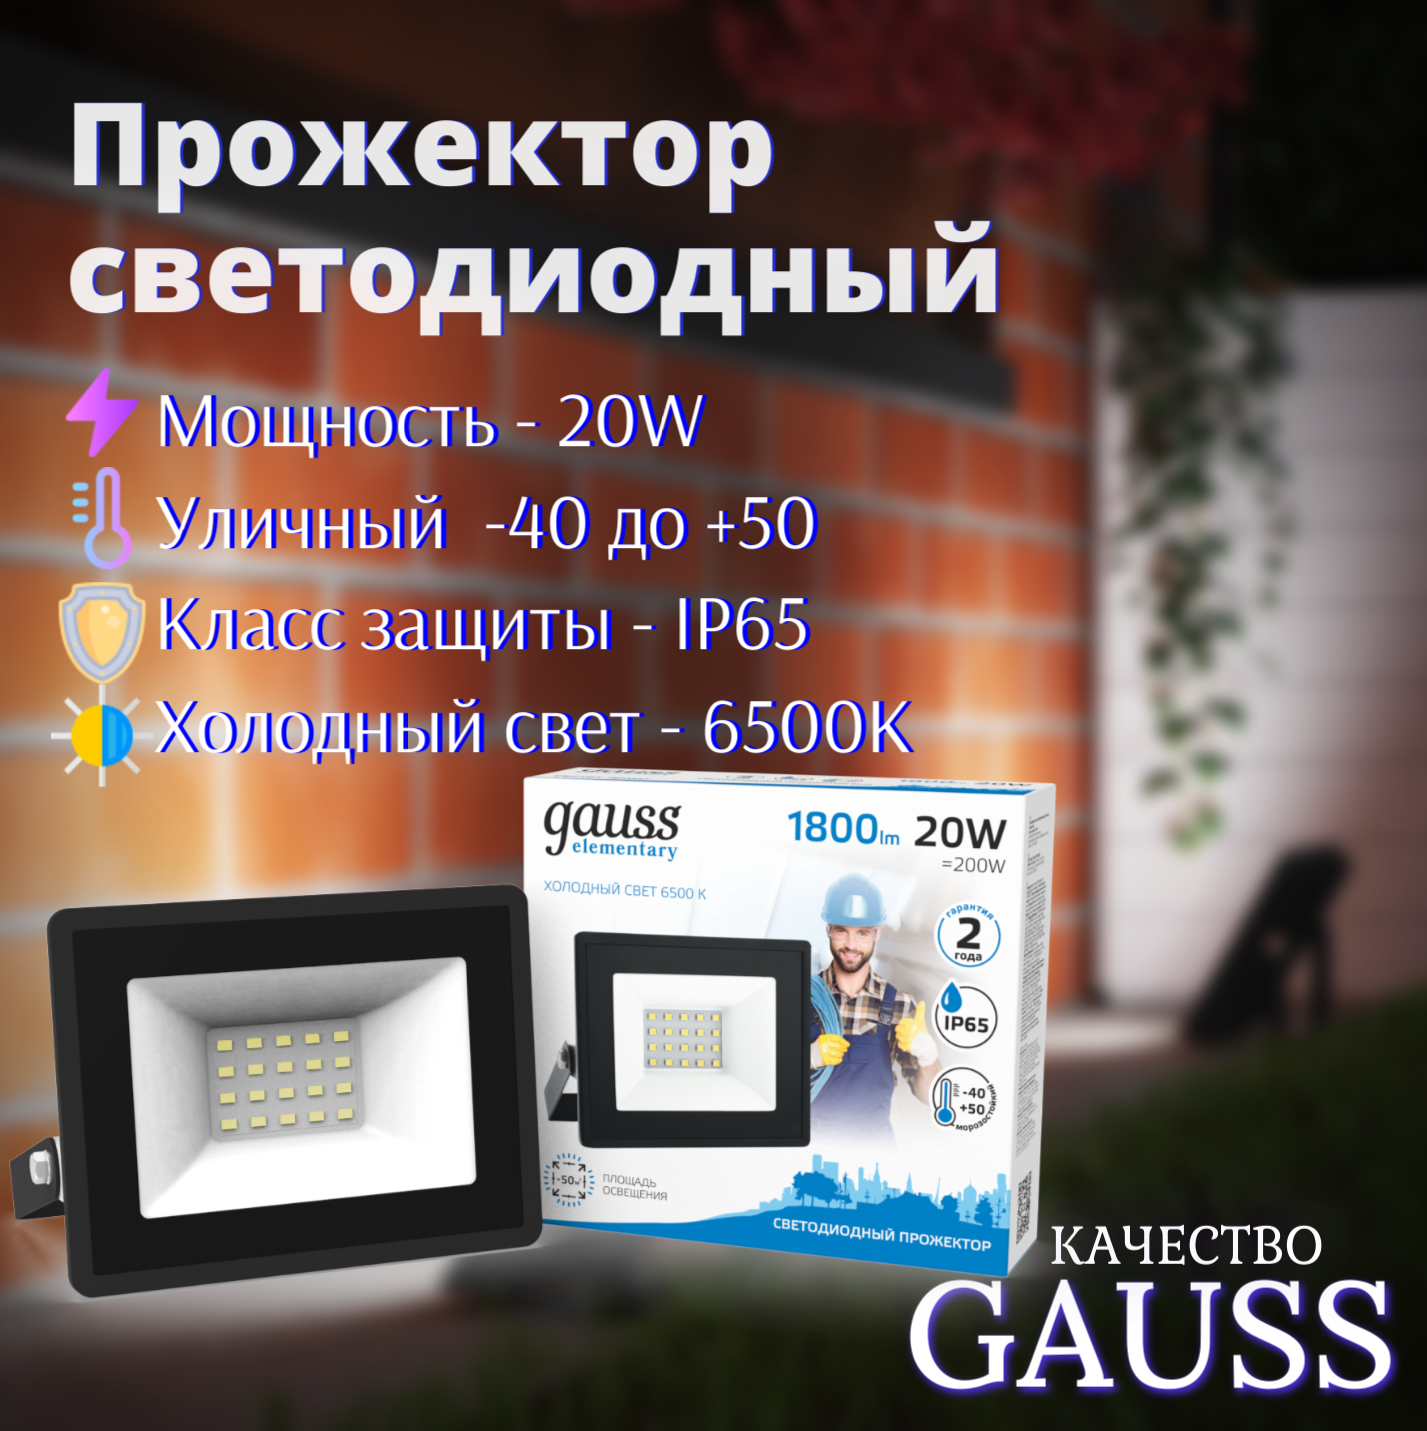 Прожектор LED 20W IP65 холодный свет 6500К черный Gauss Elementary